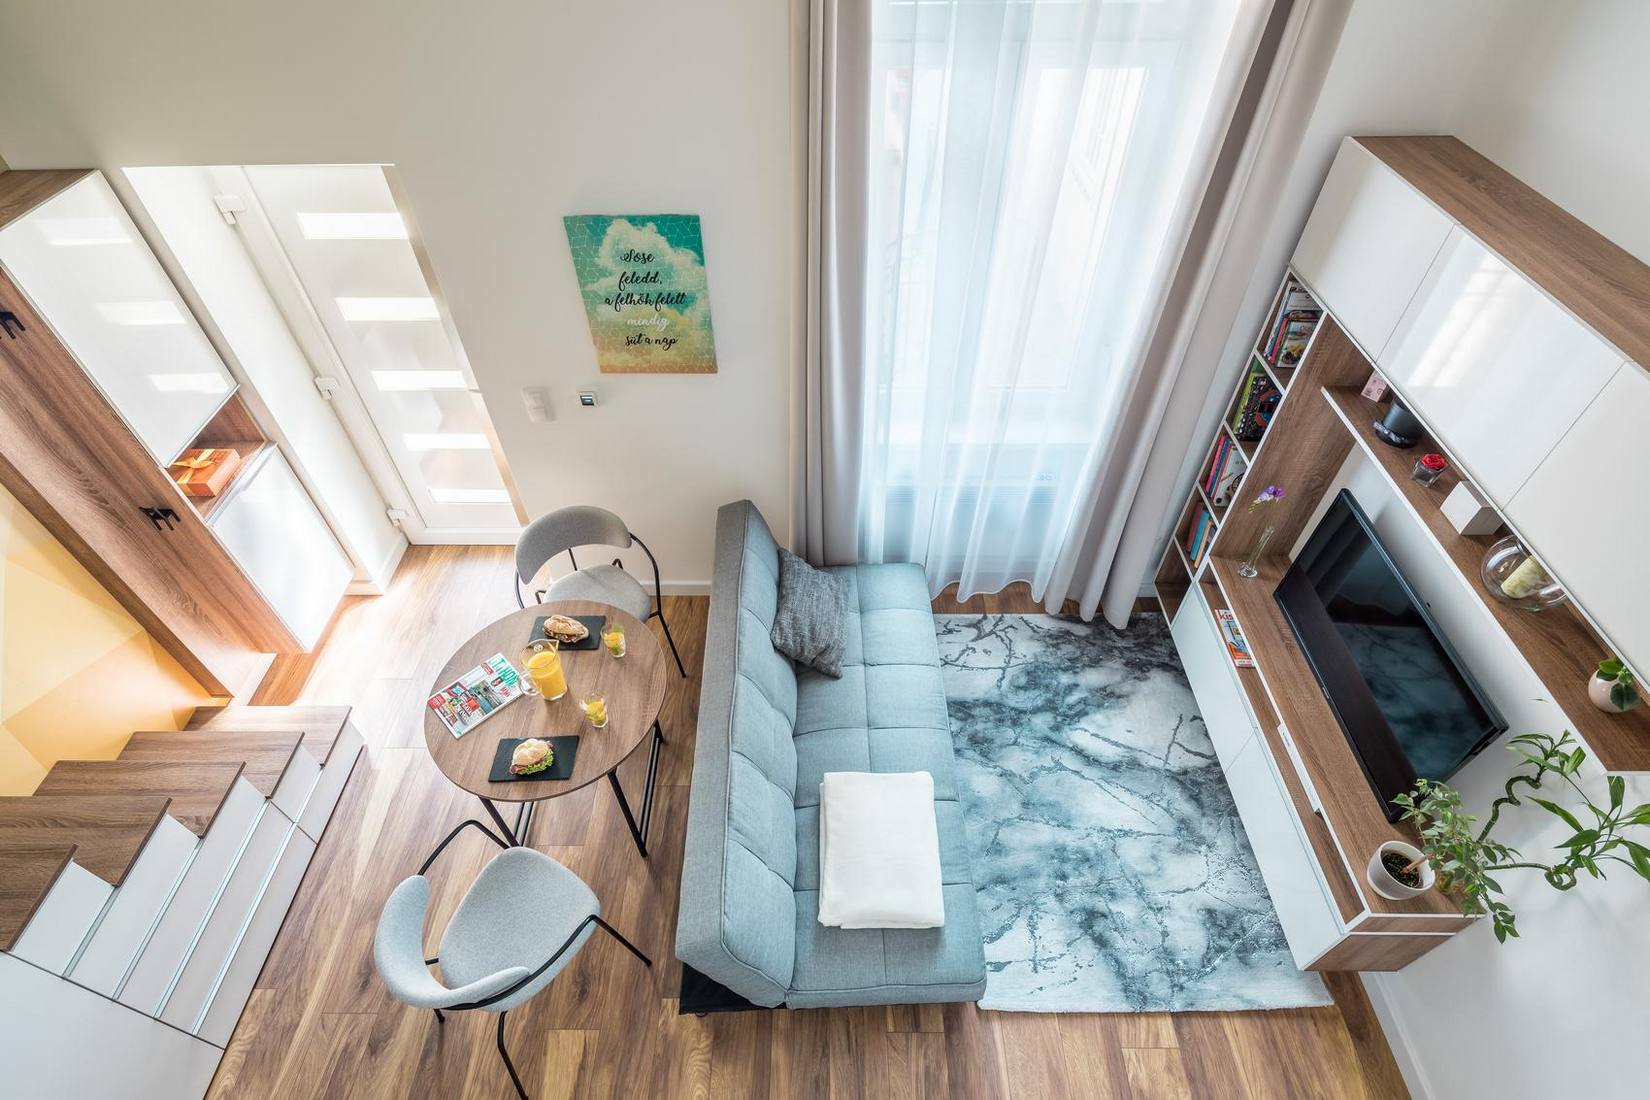 Hình ảnh phòng khách được chụp từ trên cao với ghế sofa màu xám êm ái, phân vùng với các khu vực còn lại bằng một tấm thảm trải sàn ấn tượng. Rèm che cửa sổ được tích hợp 2 lớp mỏng và dày để cản nắng và tạo sự riêng tư.